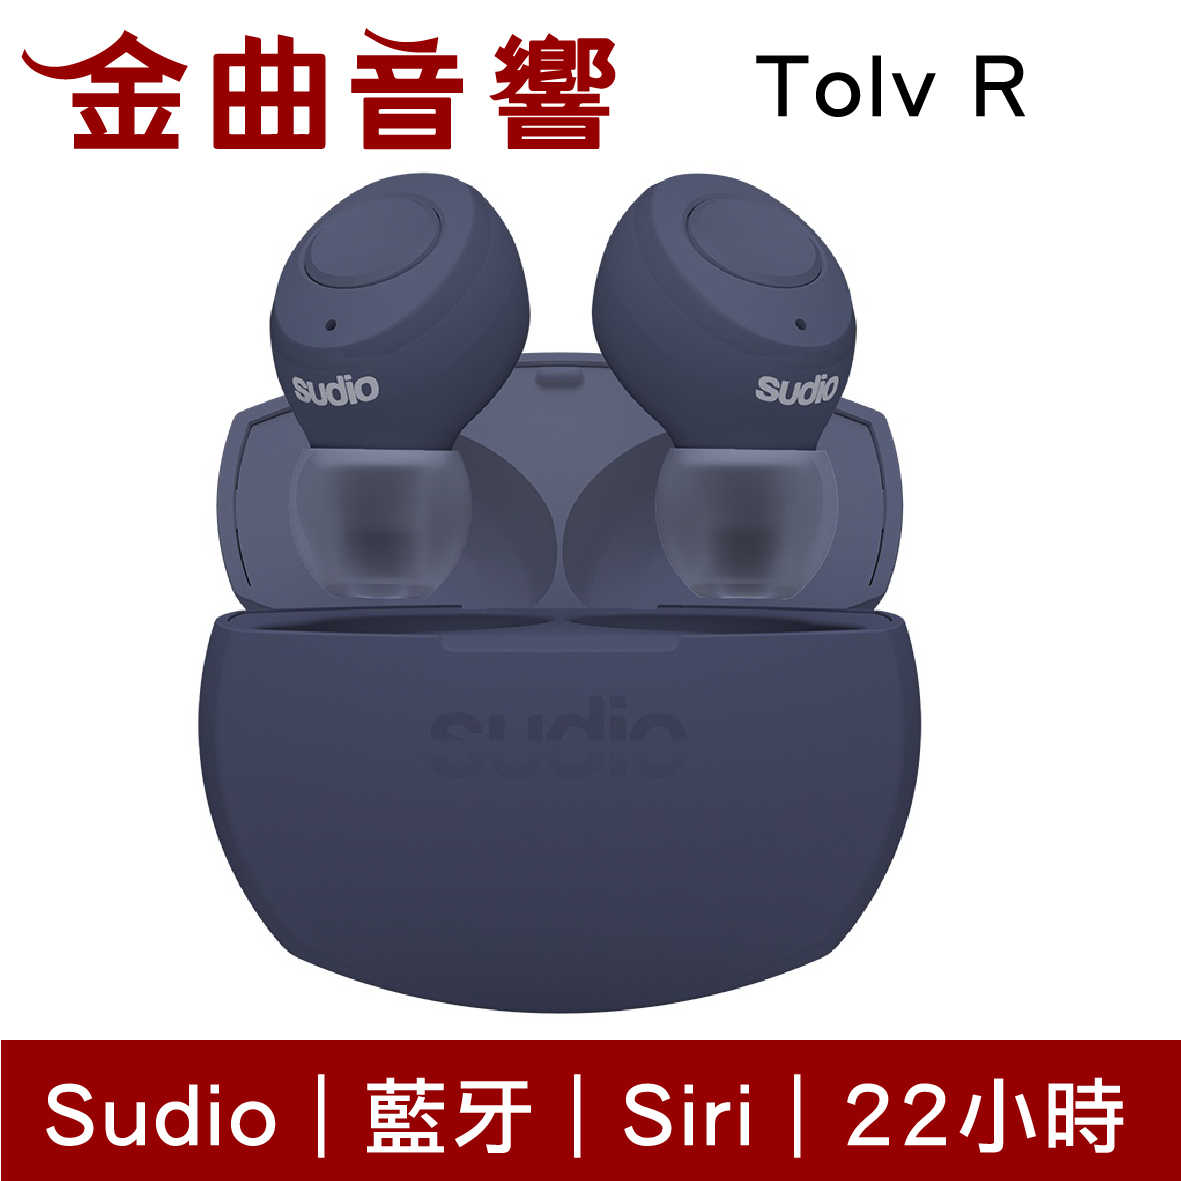 Sudio Tolv R 藍色 真無線 藍芽耳機 可通話 語音助理 TolvR | 金曲音響